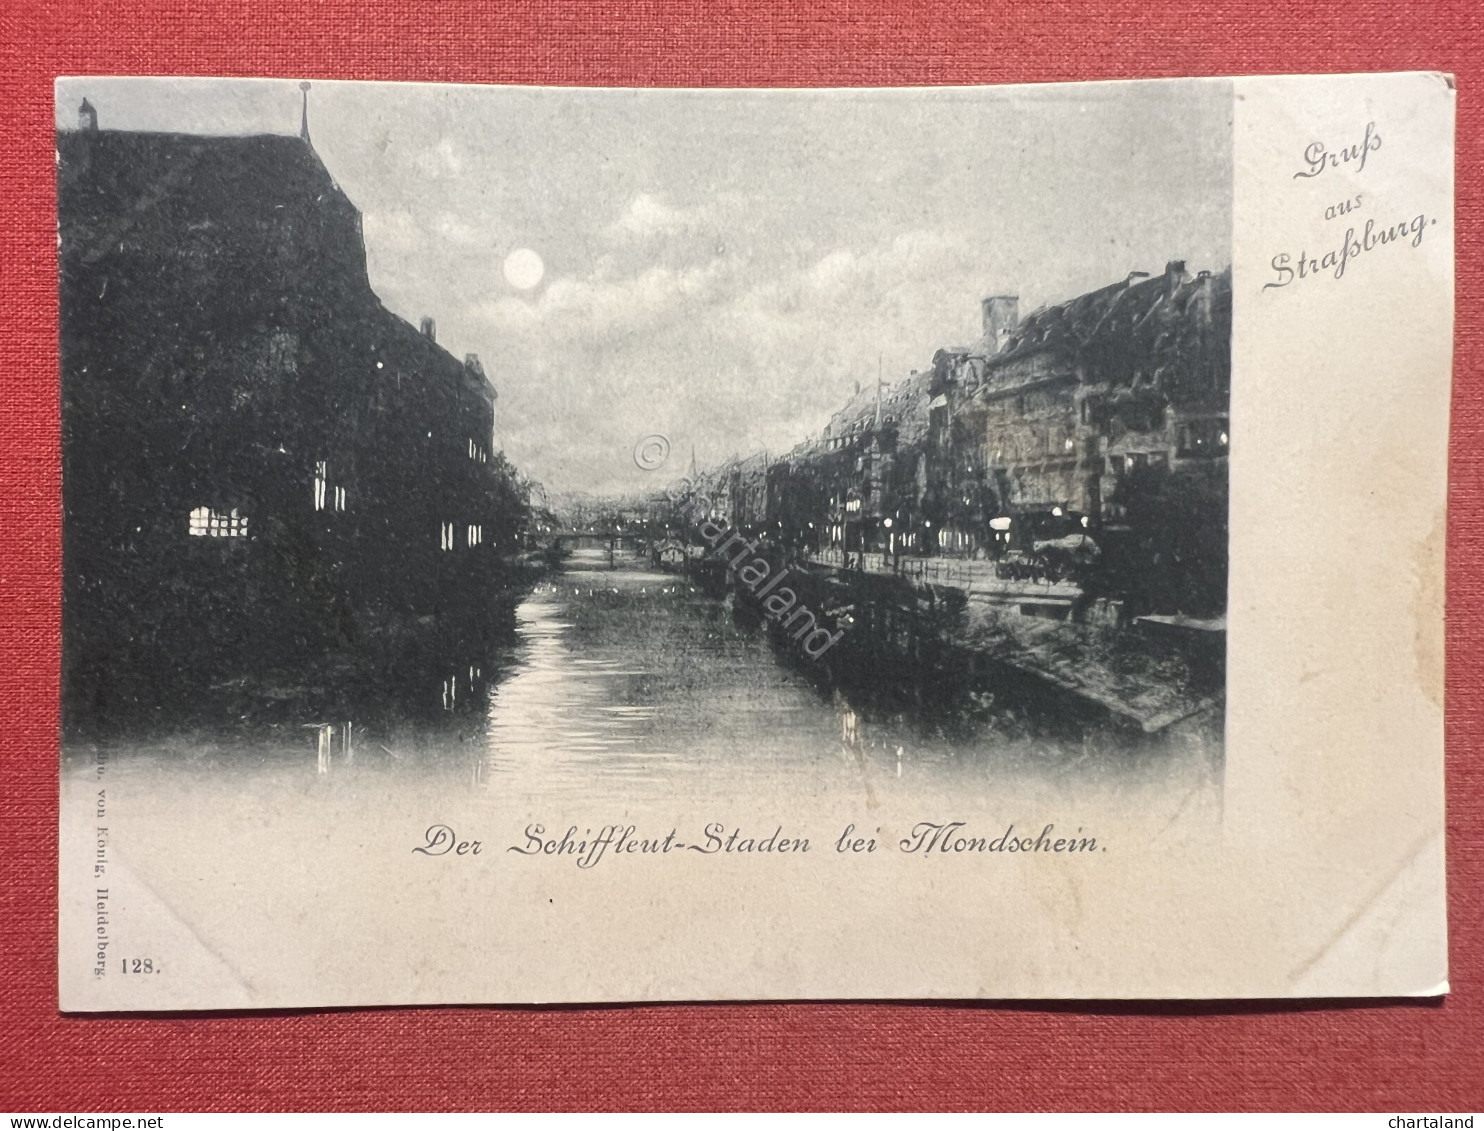 Cartolina - Gruss Aus Strassburg - Der Schiffleut-Staden Bei Mondschein 1900 Ca. - Unclassified